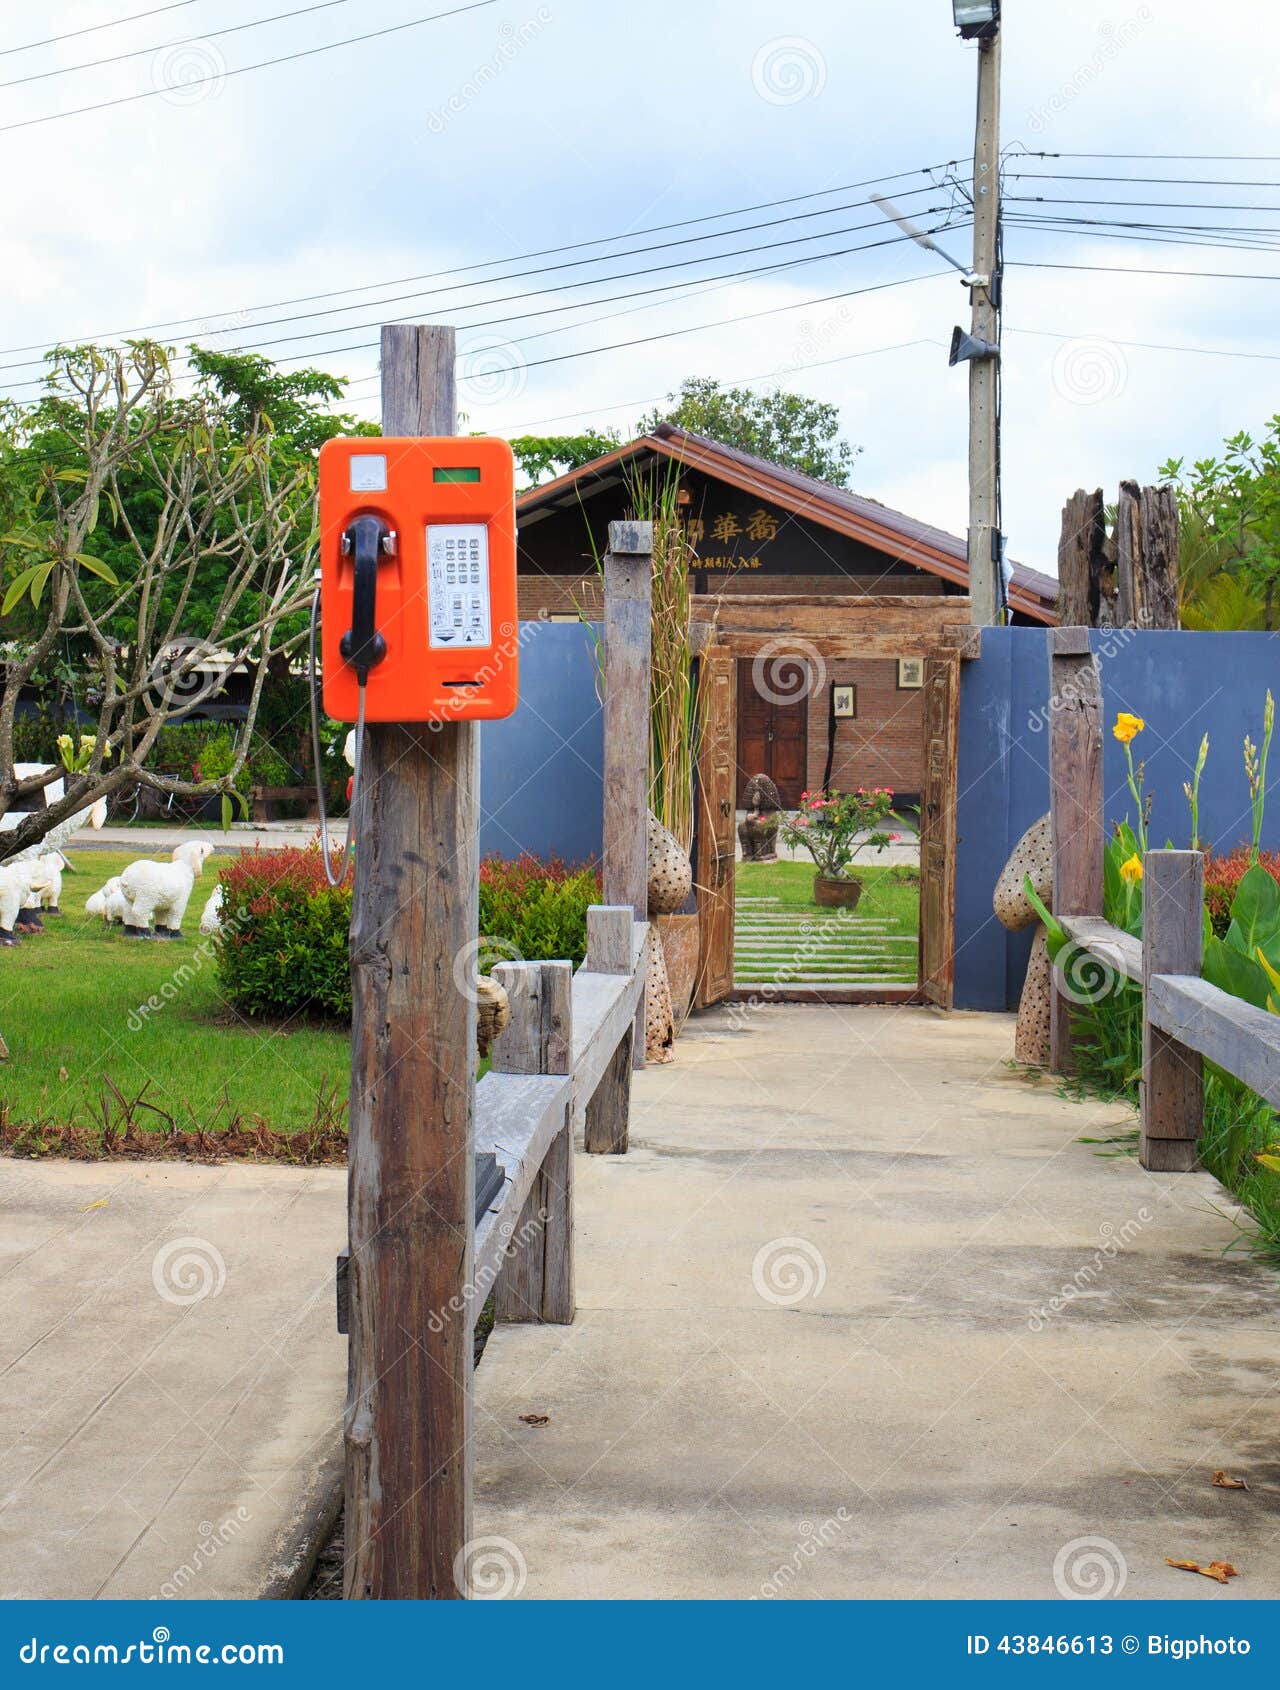 Openbaar telefoon dubbel systeem in Thailand, kaart en muntstuk